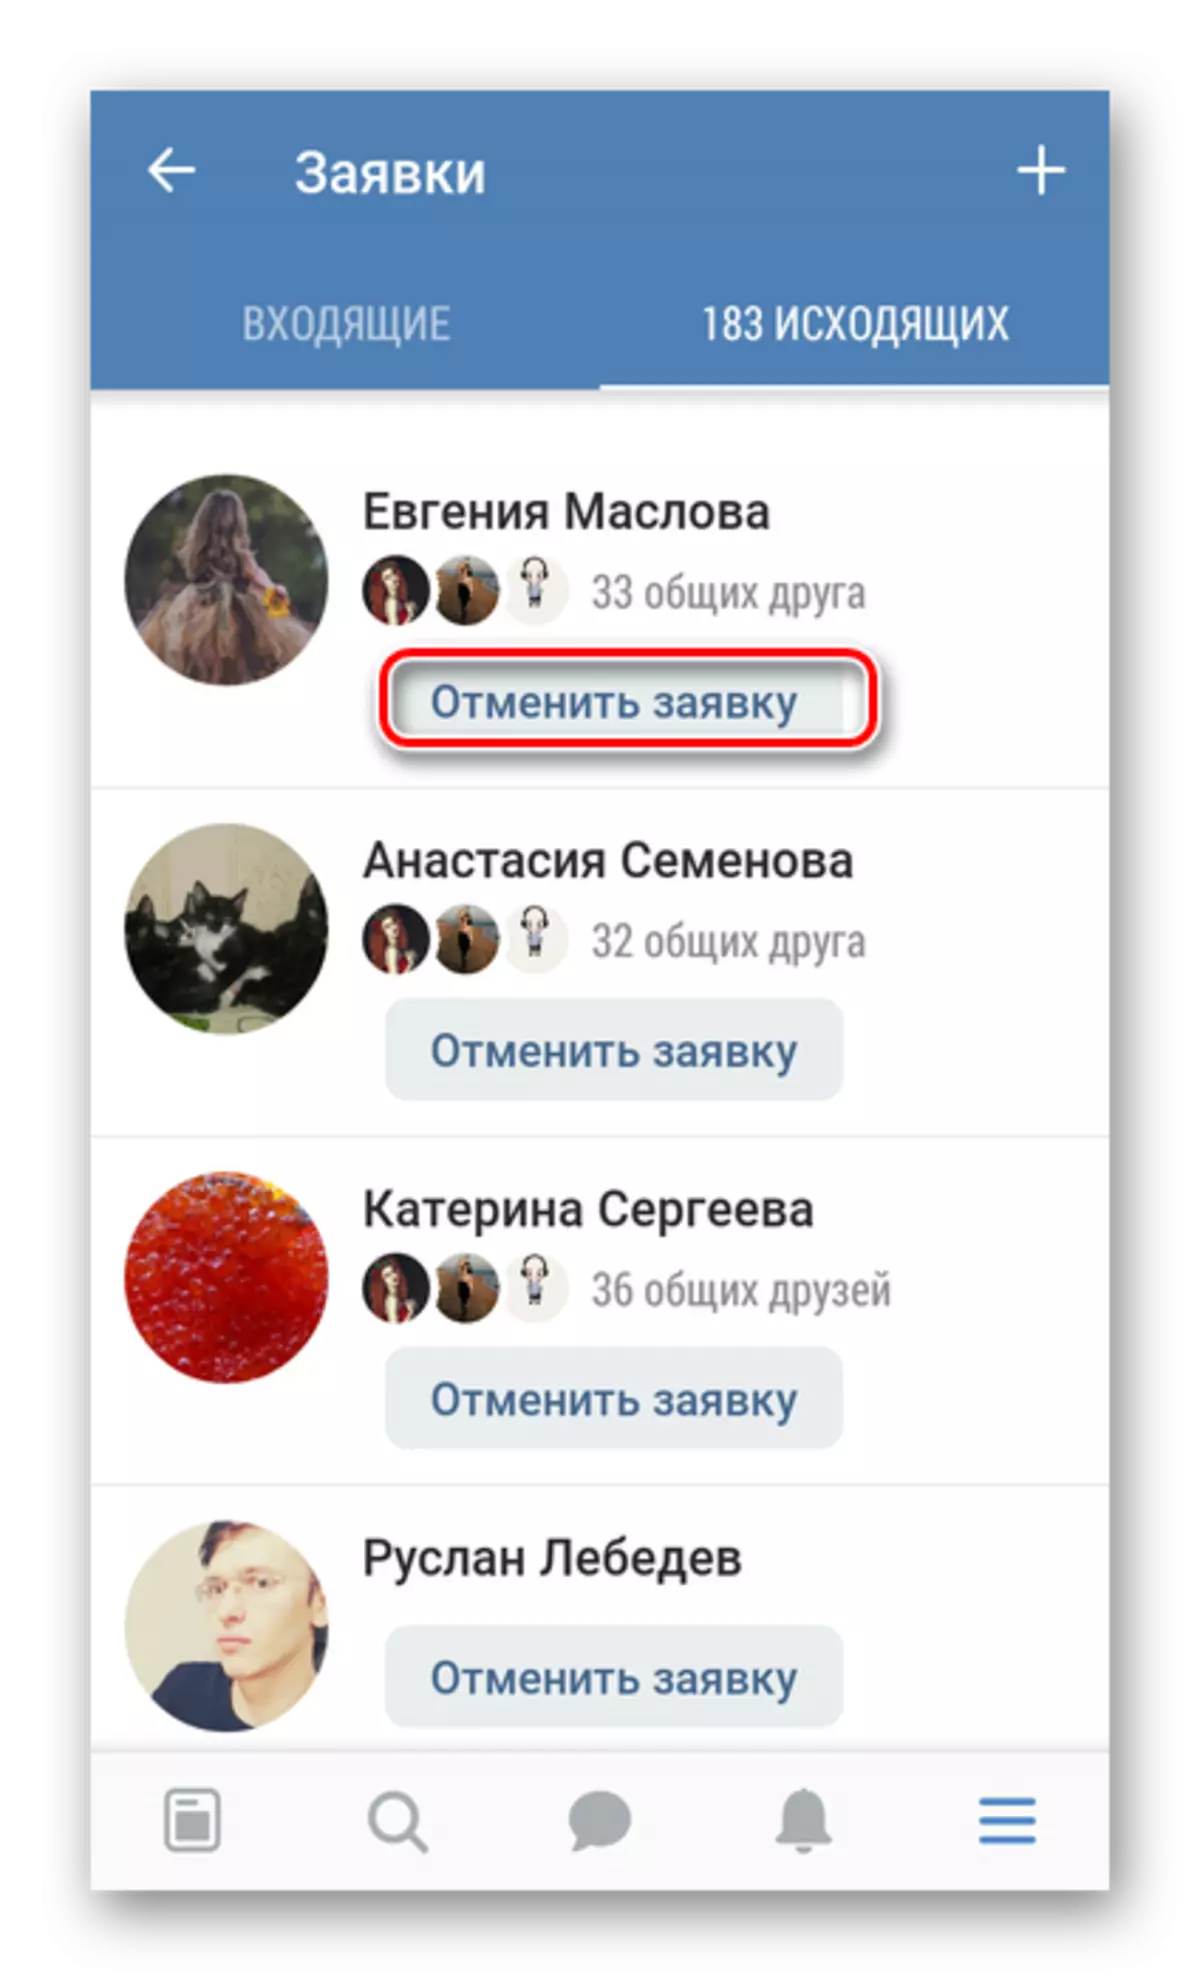 VKontakte ಅಪ್ಲಿಕೇಶನ್ನಲ್ಲಿ ನಿಮ್ಮ ಸ್ನೇಹ ಅಪ್ಲಿಕೇಶನ್ ಅನ್ನು ರದ್ದುಗೊಳಿಸಿ